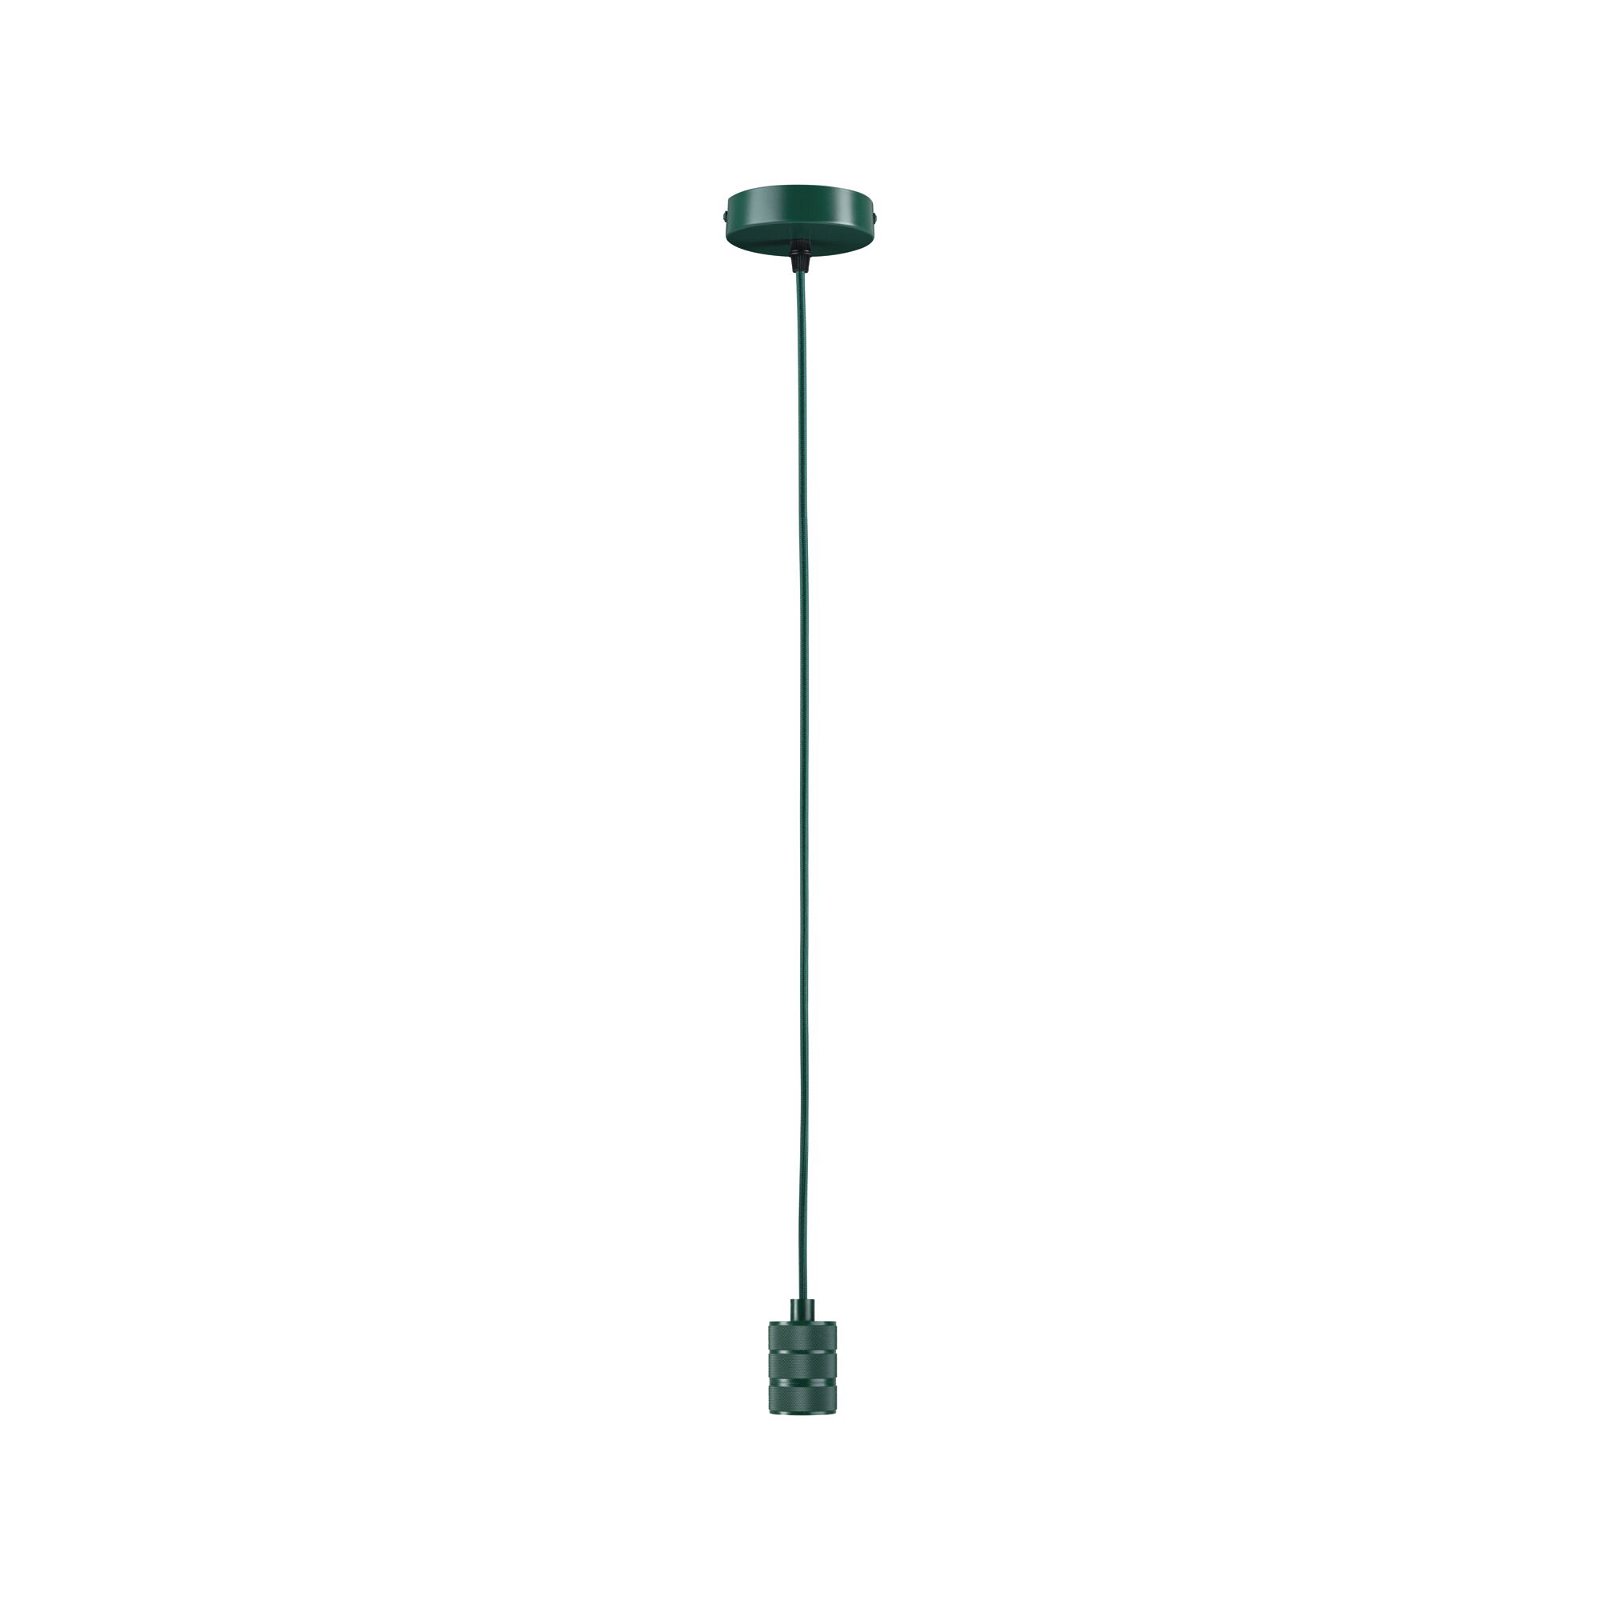 Neordic Hanglamp Tilla E27 max. 60W Groen dimbaar Metaal